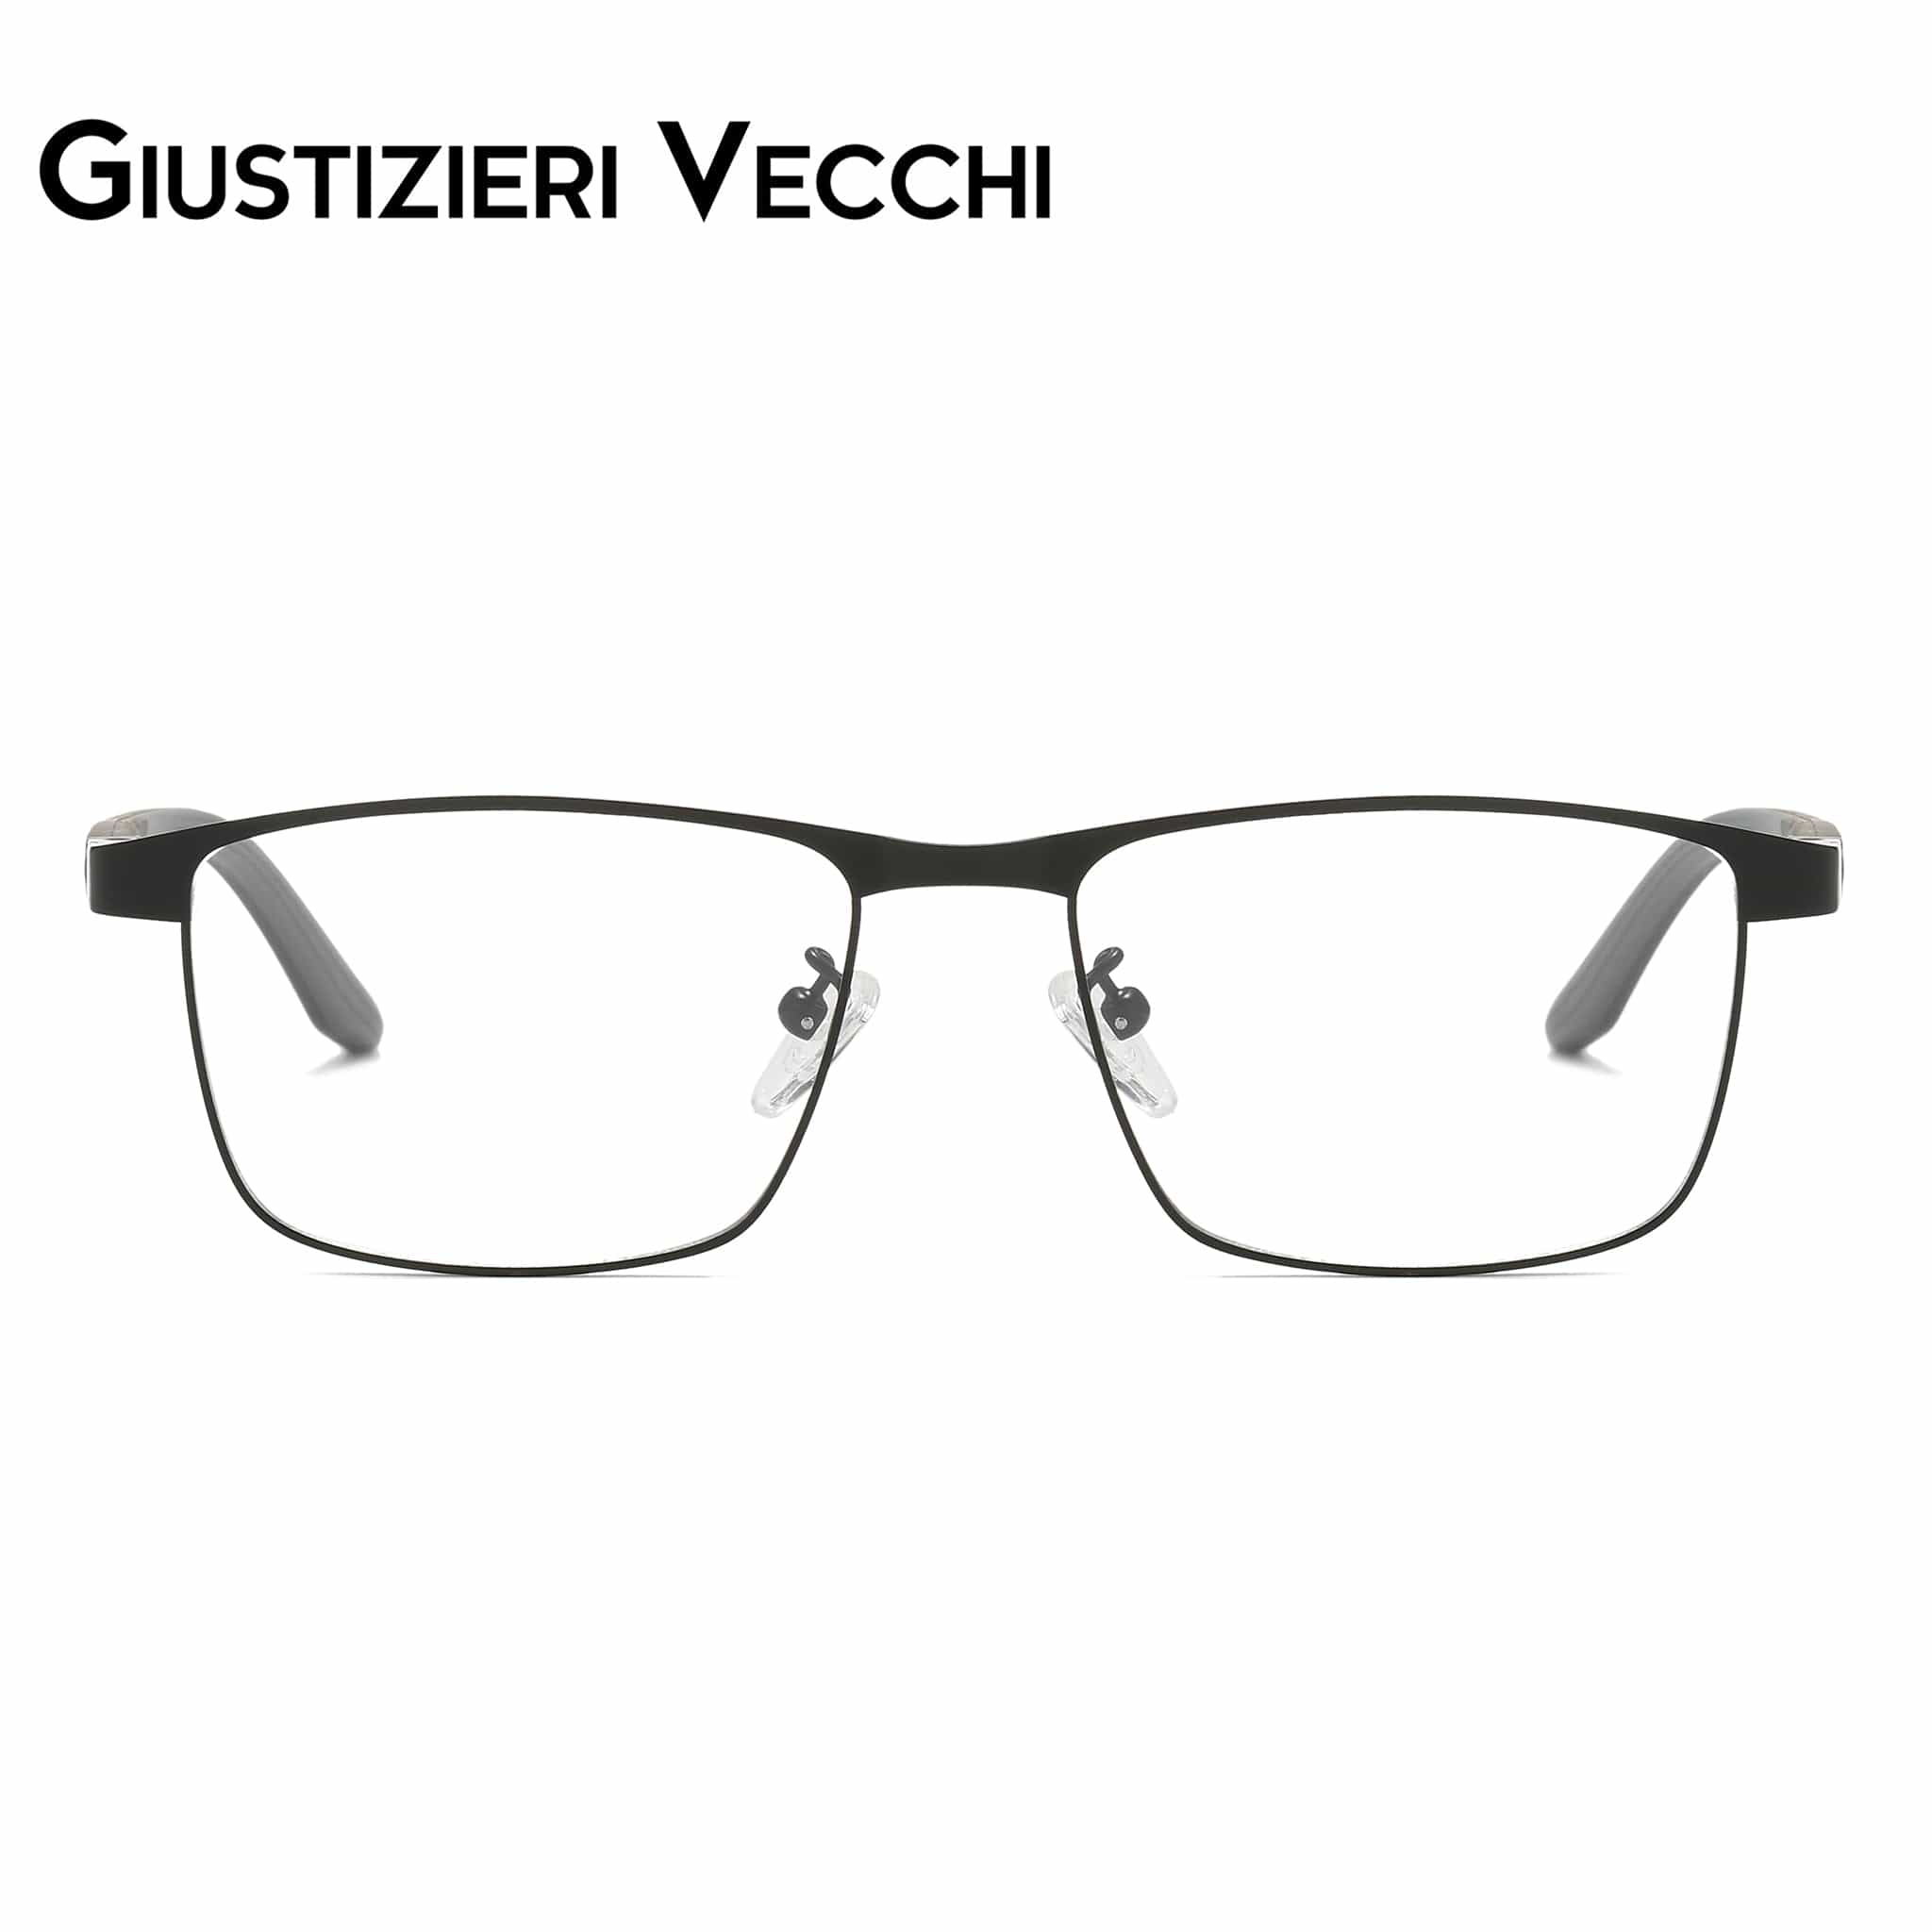 GIUSTIZIERI VECCHI Eyeglasses Black with Grey / Medium Summer Breeze Uno